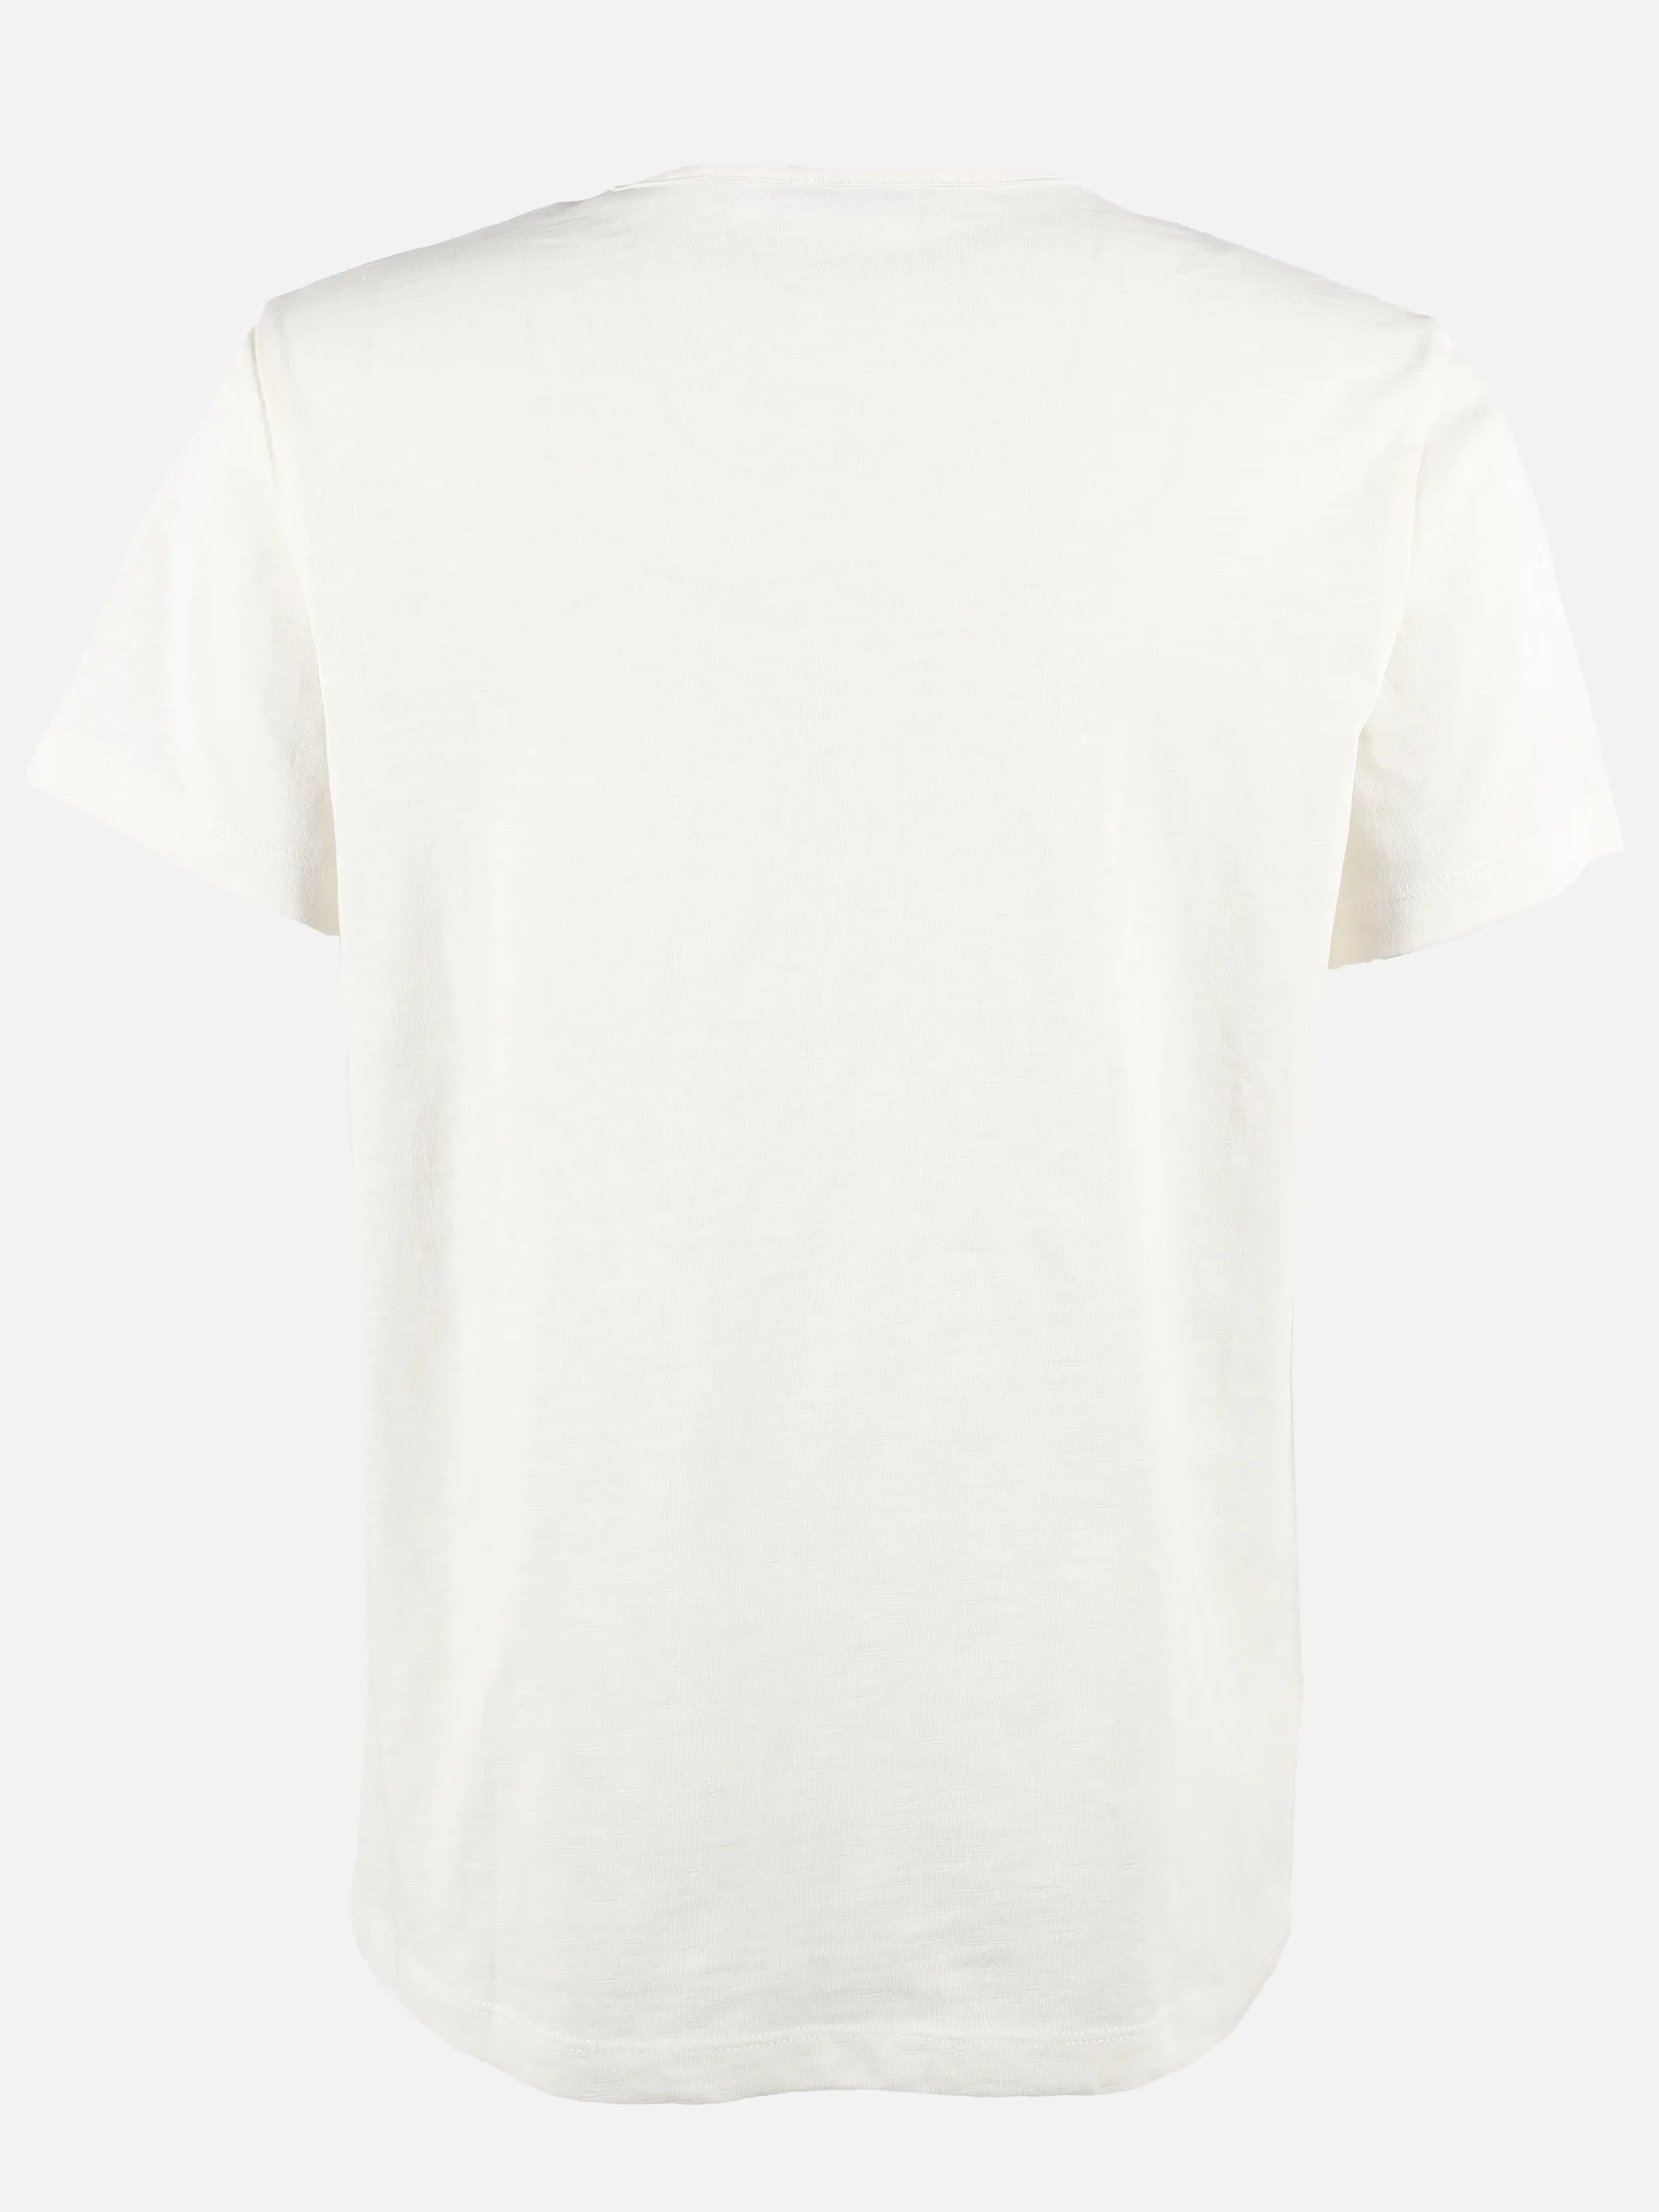 Stop + Go JJ T-Shirt in offwhite mit Frontdruck Weiß 891499 OFFWHITE 2